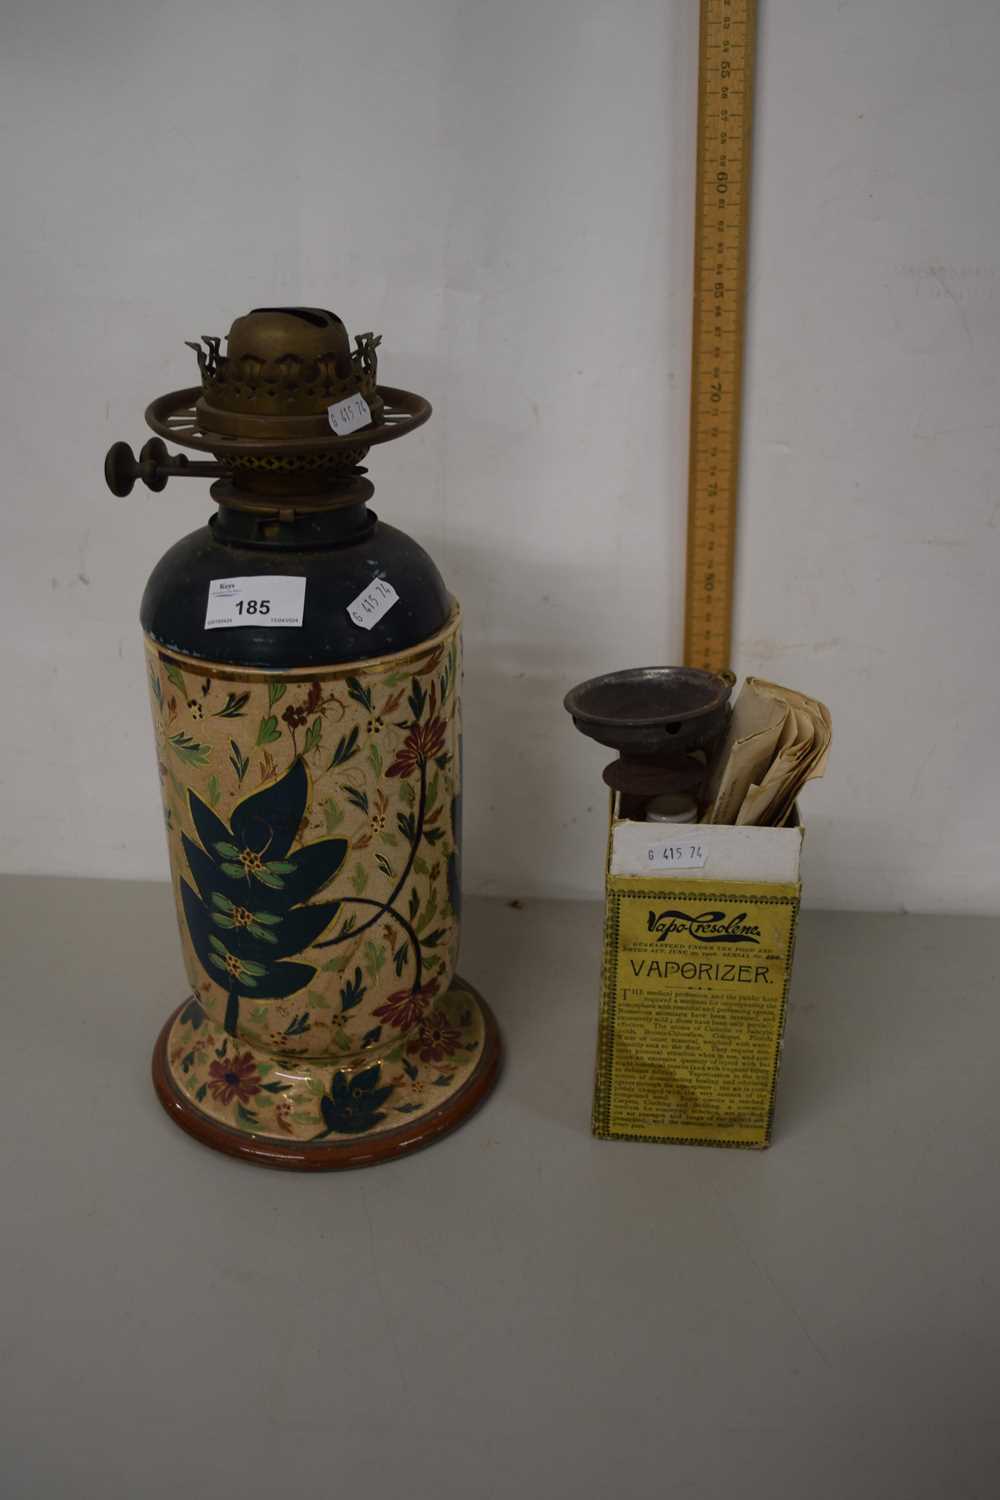 Ceramic based oil lamp together with a vintage vaporiser